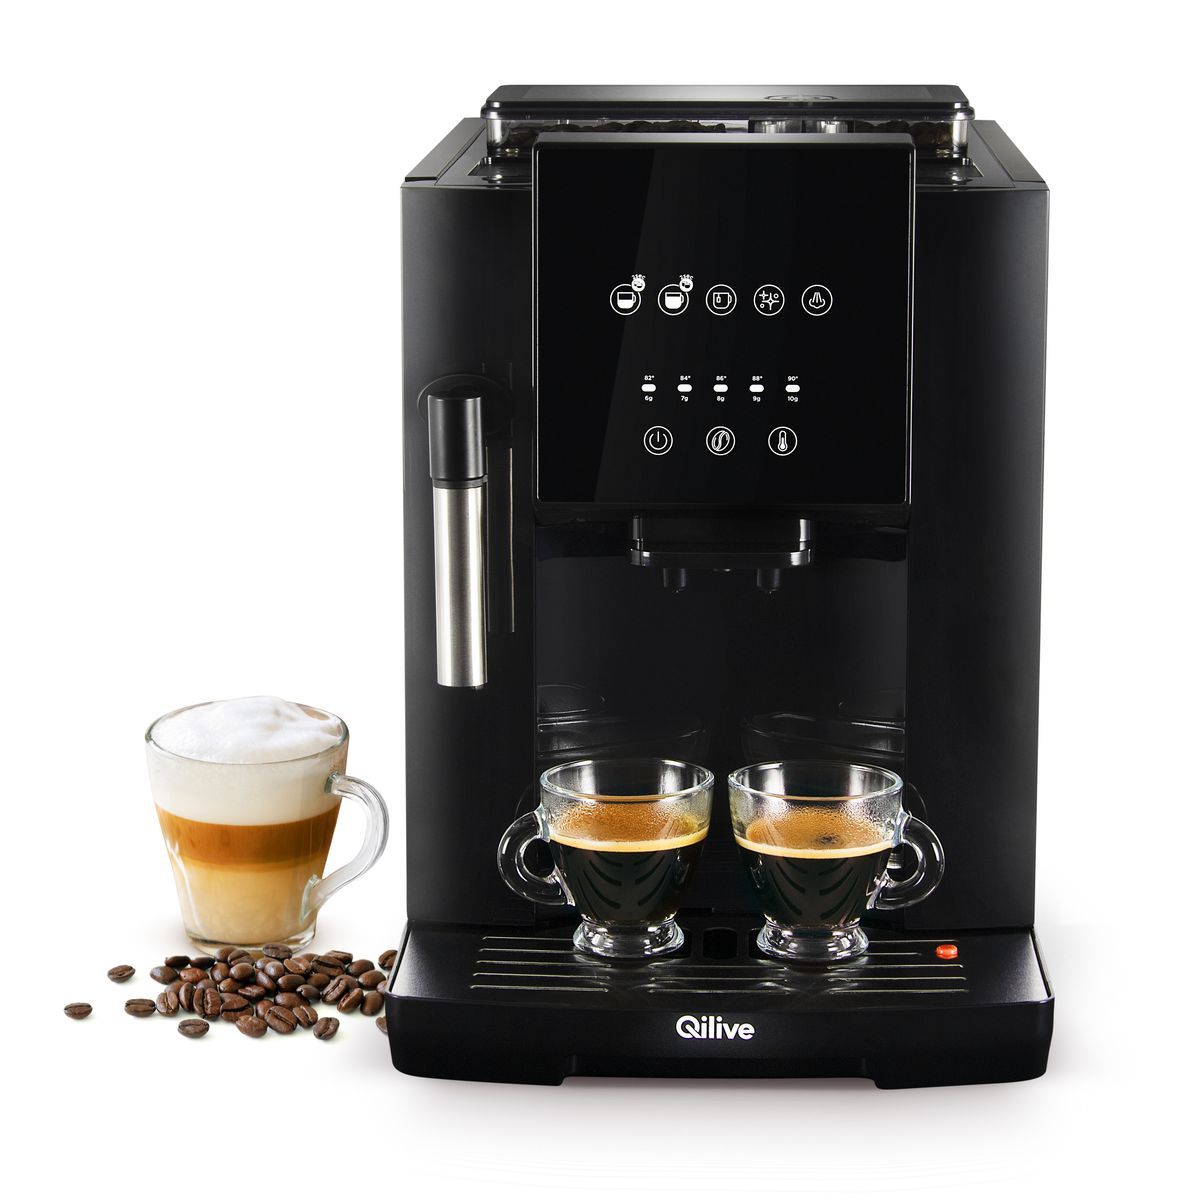 Alarming Grafting Mania QILIVE Machine à café expresso avec broyeur à grain Q.5404 - Noir pas cher  - Auchan.fr